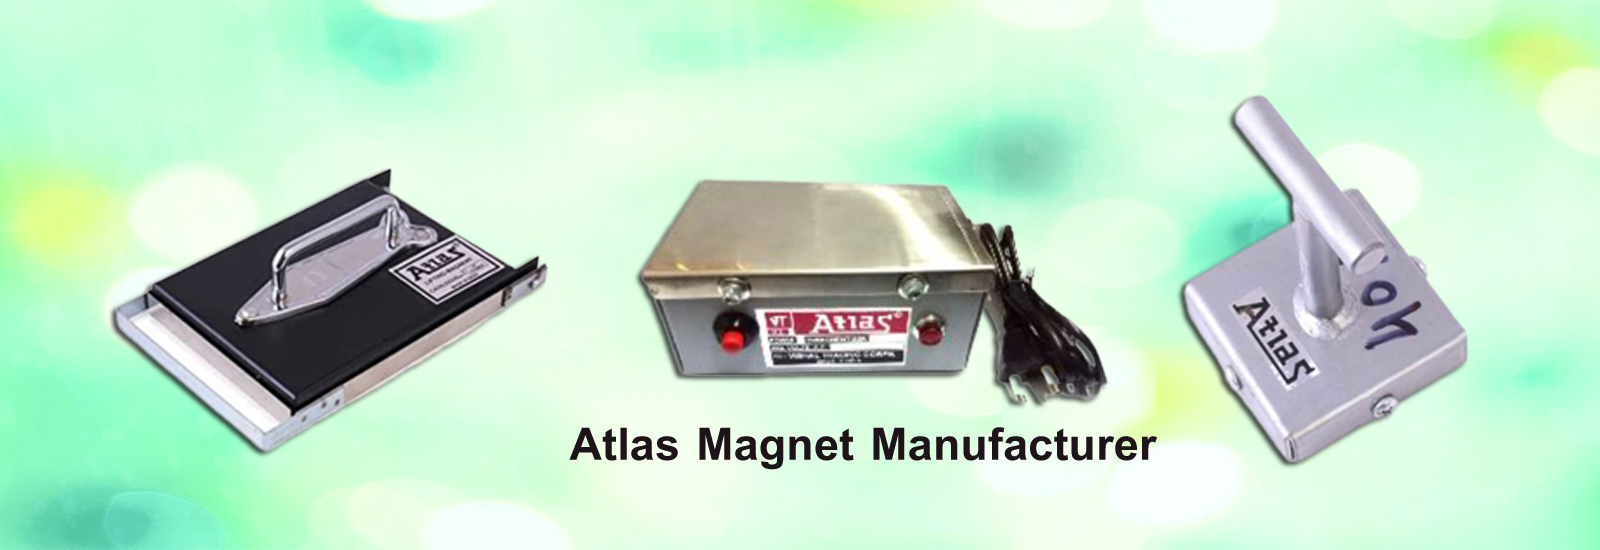 Atlas Magnets, AtlasMagnets, atlas magnets